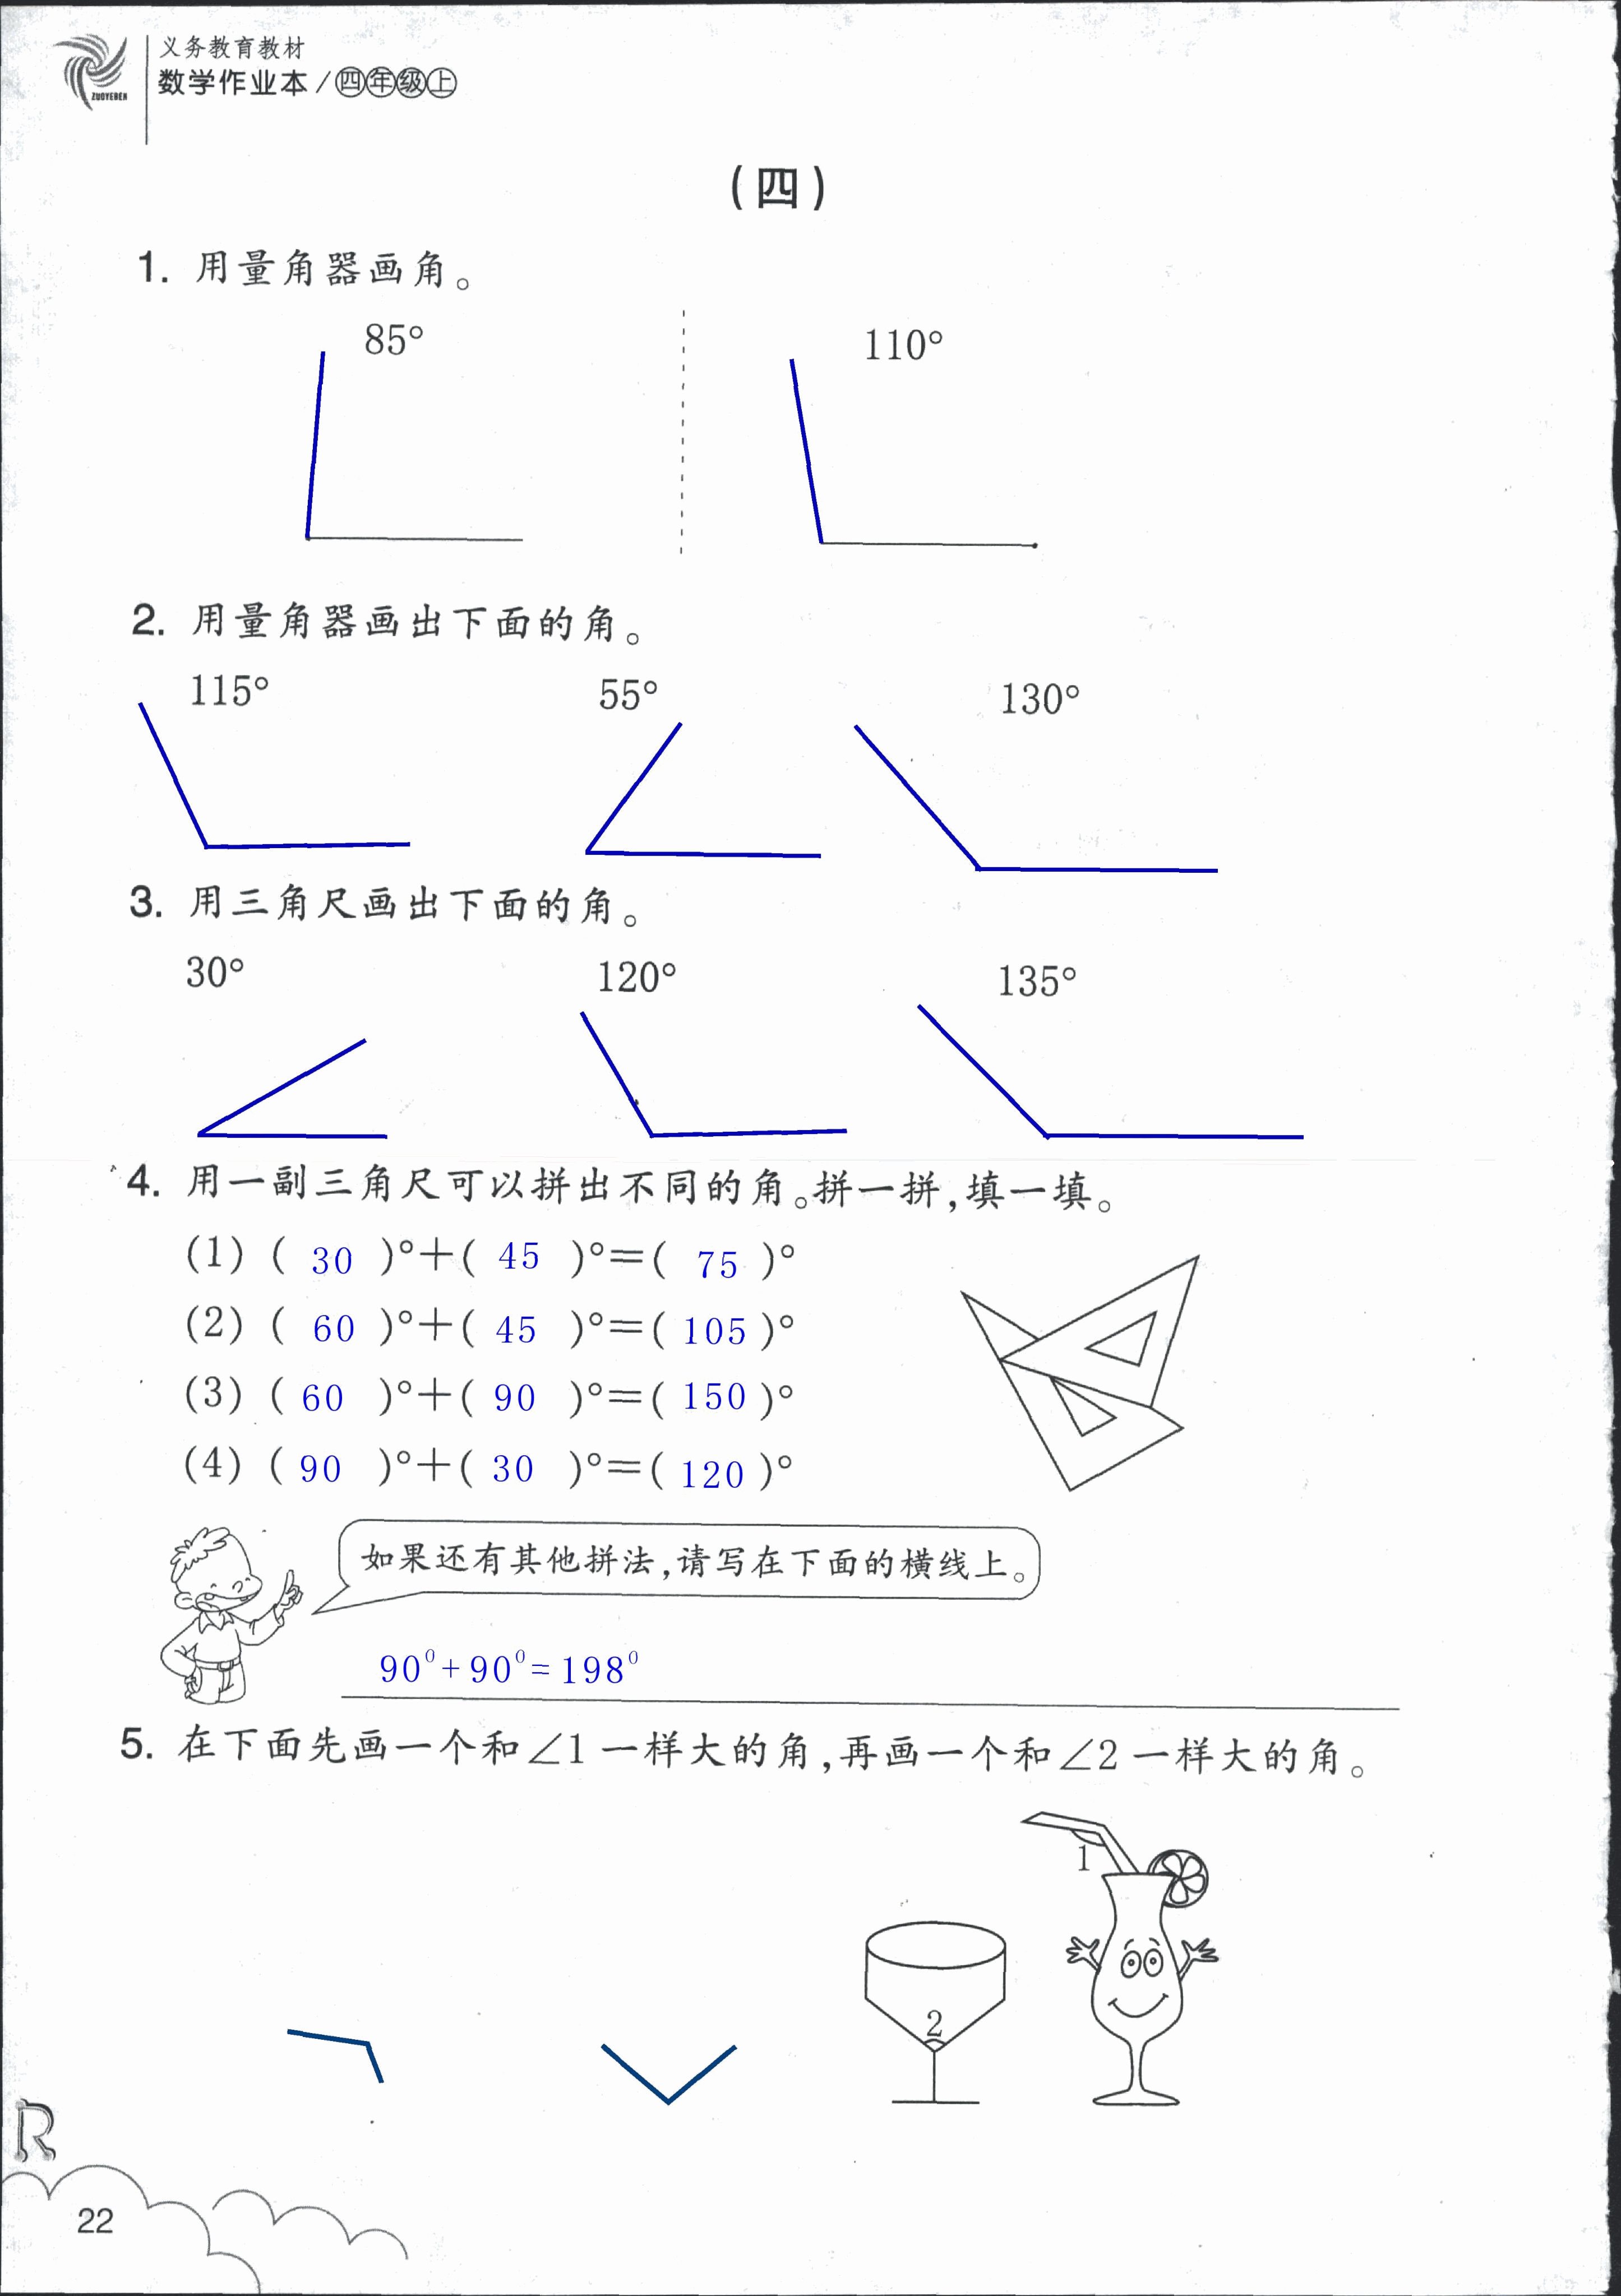 数学作业本 第22页